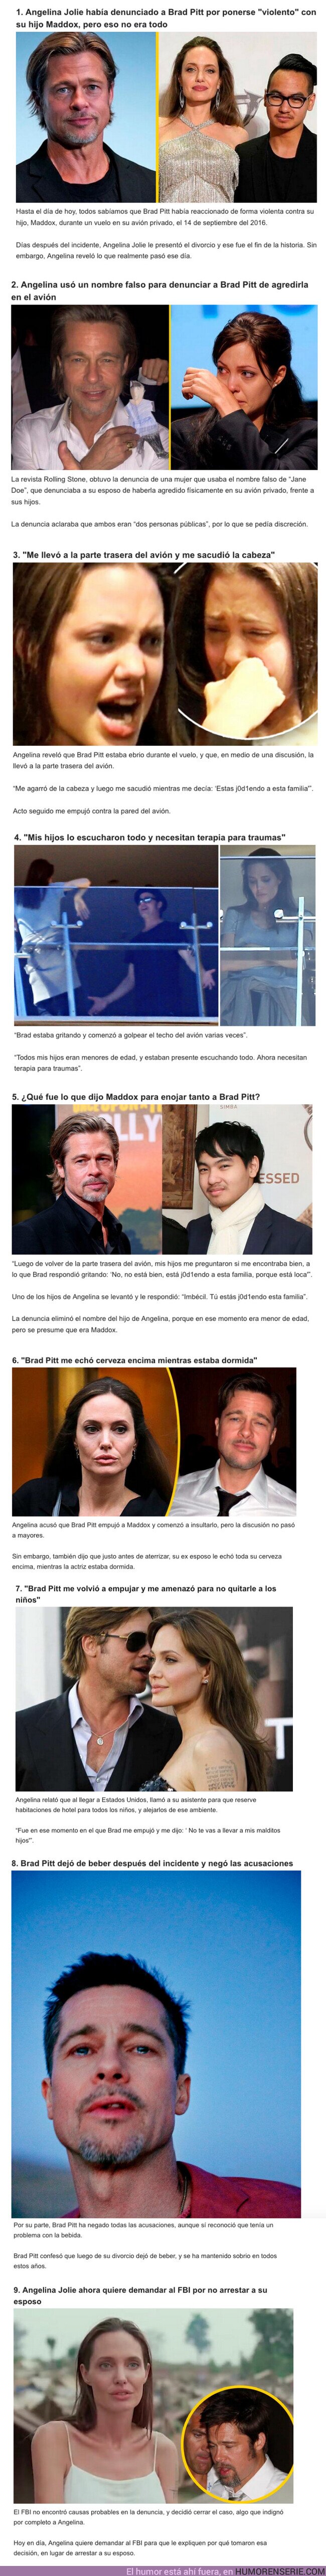 106044 - GALERÍA: Angelina Jolie reveló 8 detalles sobre la pelea que tuvo con Brad Pitt en un avión privado que ocasionó su divorcio